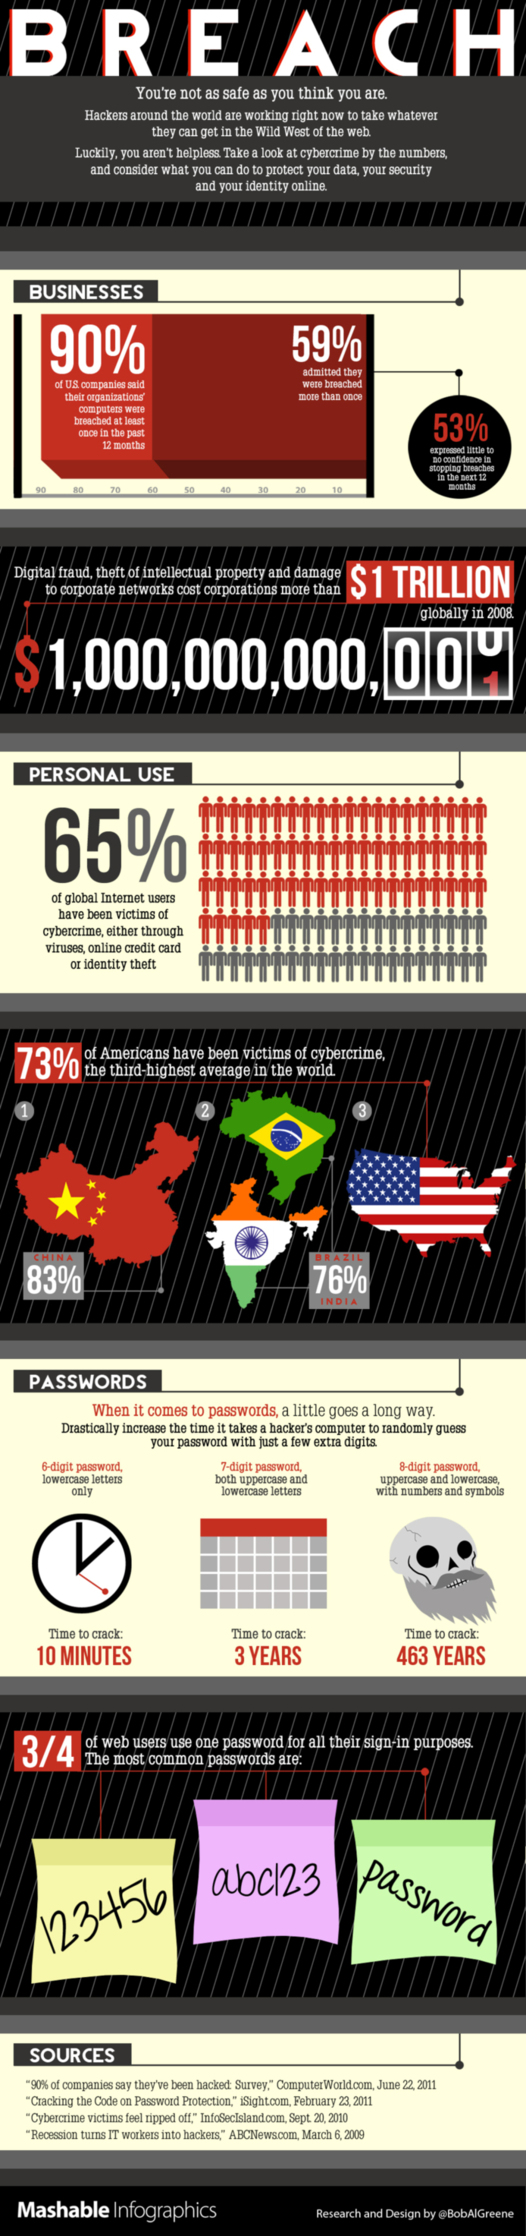 La cybercriminalité touche 65% des internautes (en 1 image)